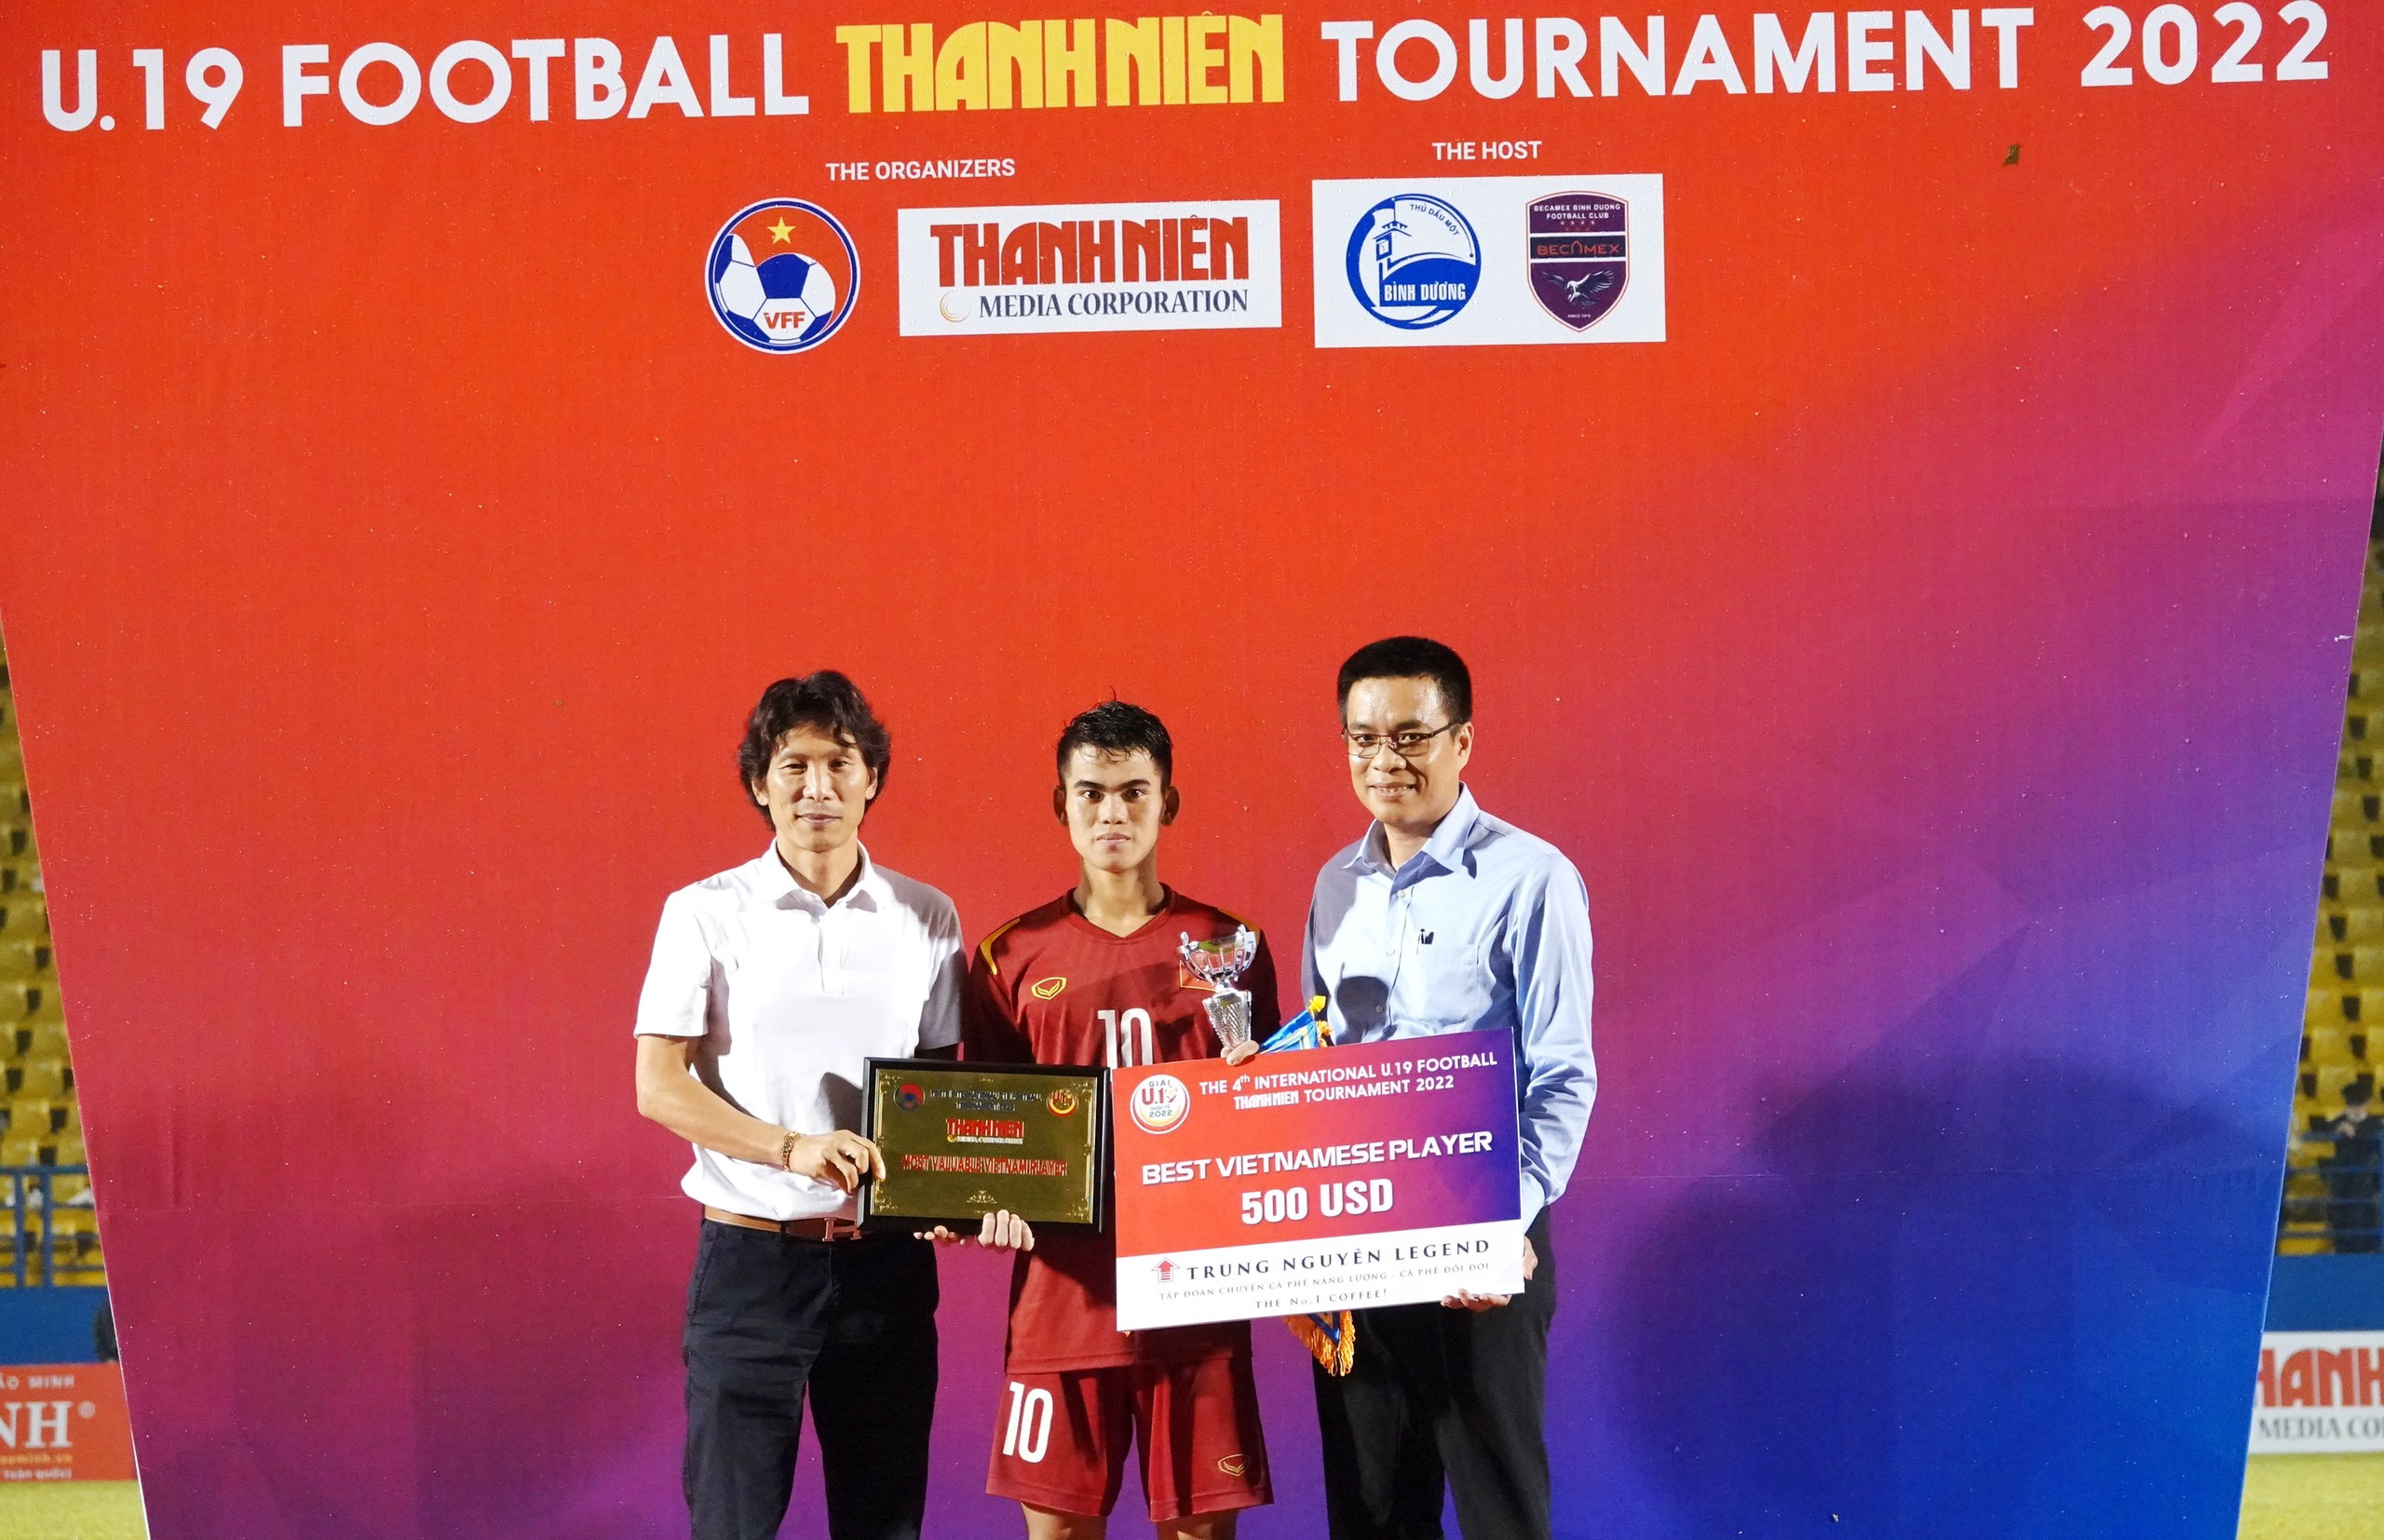 Ngoài danh hiệu vô địch, U19 Việt Nam cũng ăm thêm các giải thưởng phụ như thủ môn xuất sắc và cầu thủ xuất sắc nhất dành cho Văn Khang.